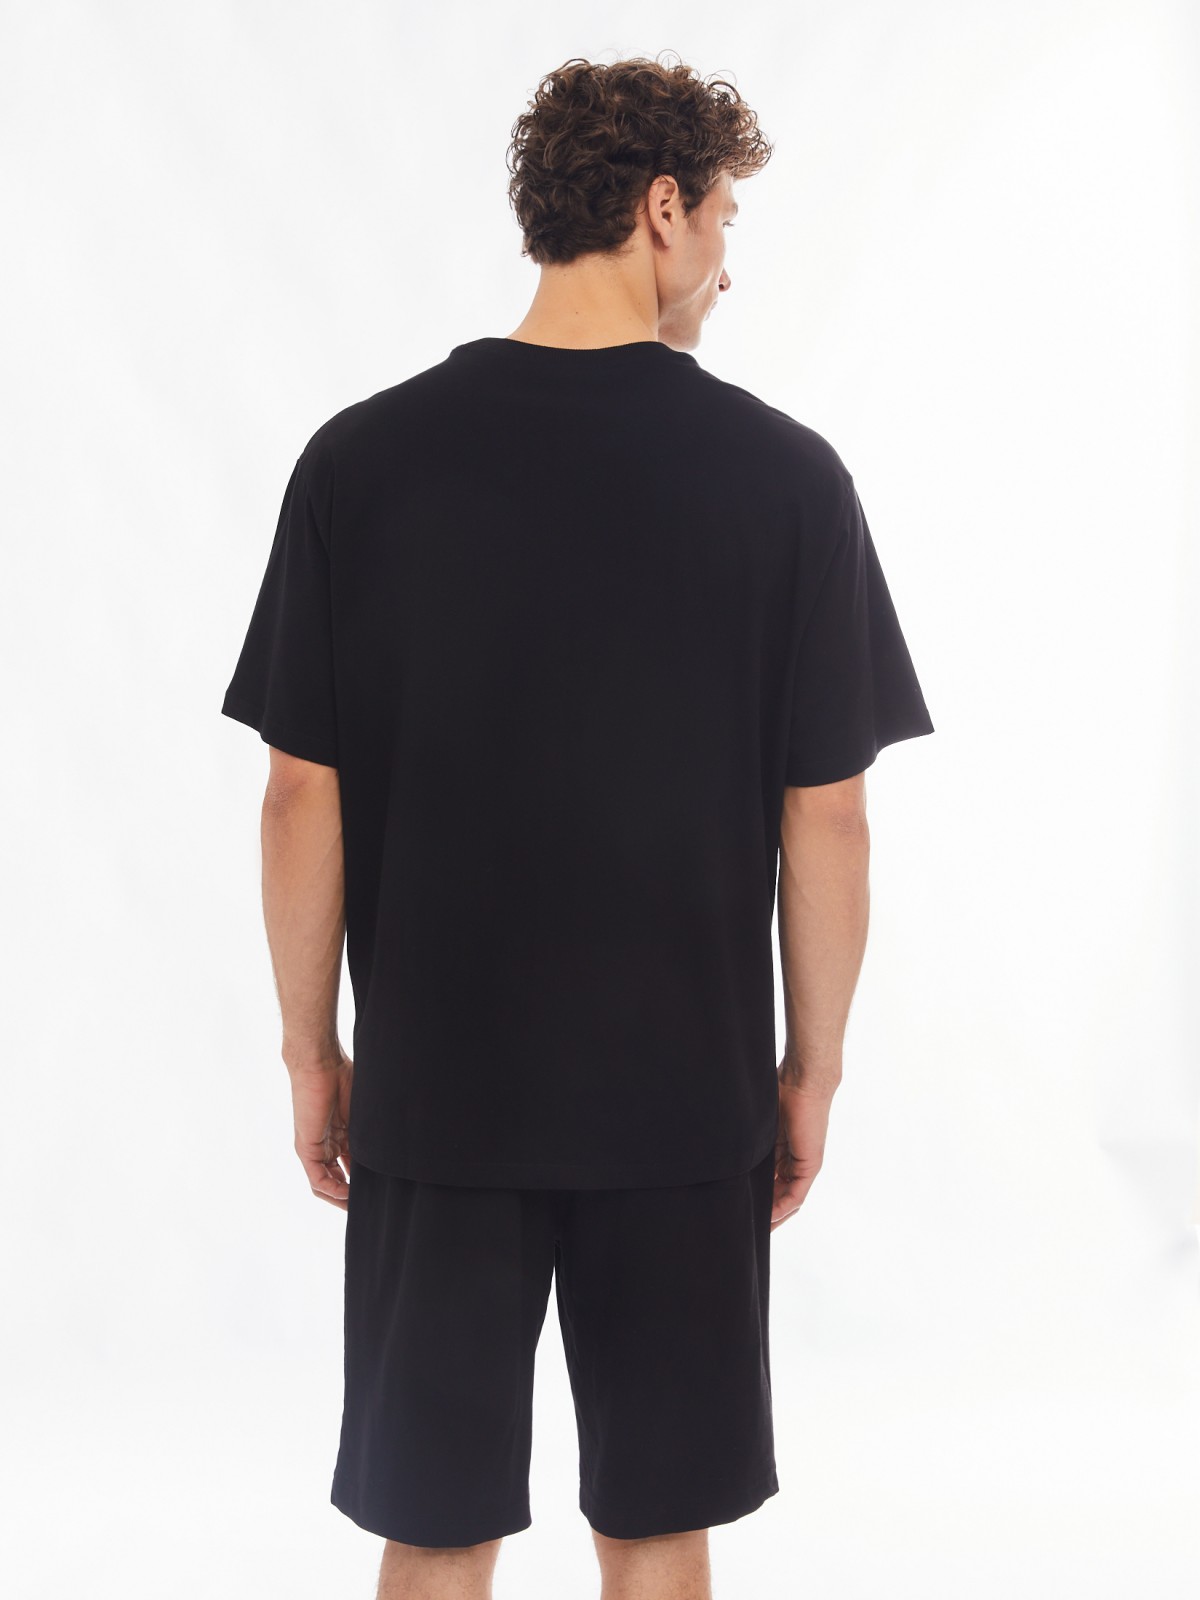 Домашний комплект из хлопка (футболка, шорты) zolla 61413870W041, цвет черный, размер S - фото 4